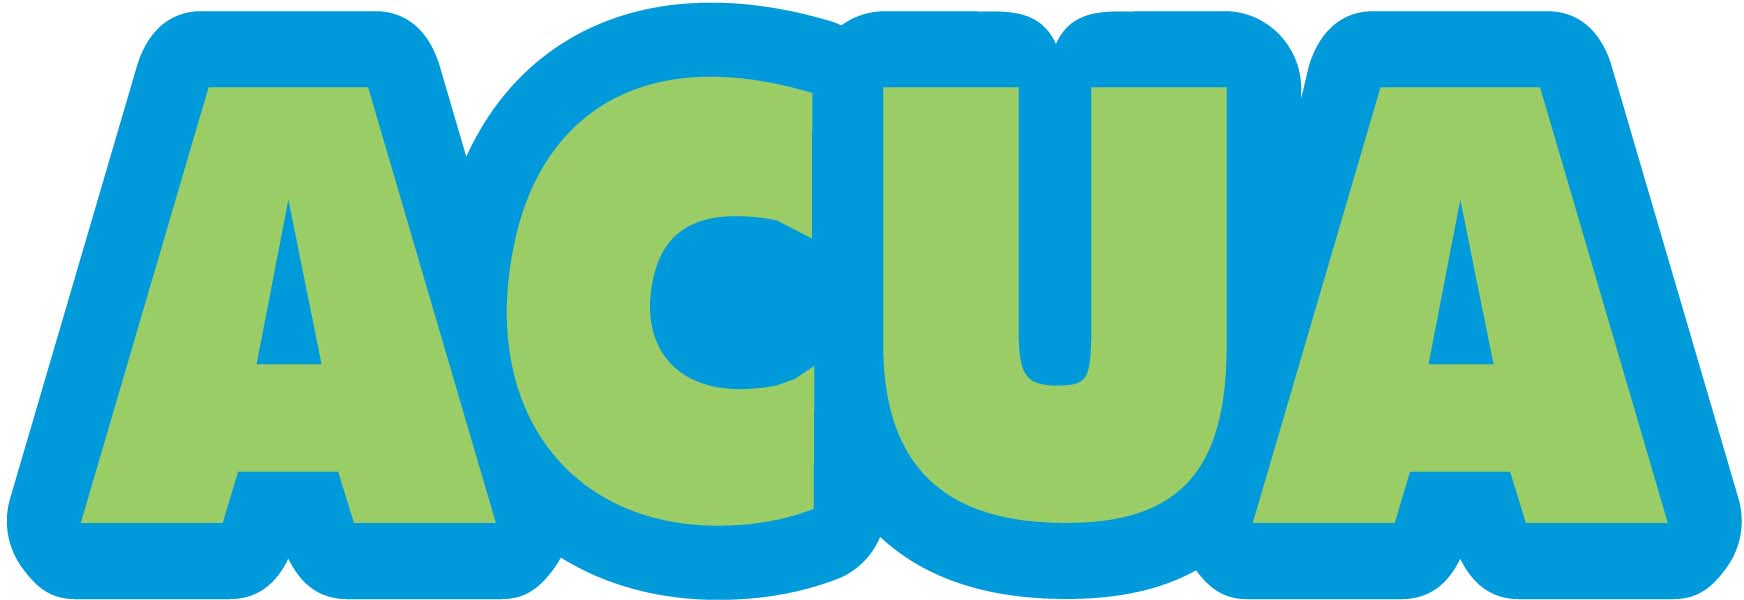 ACUA logo